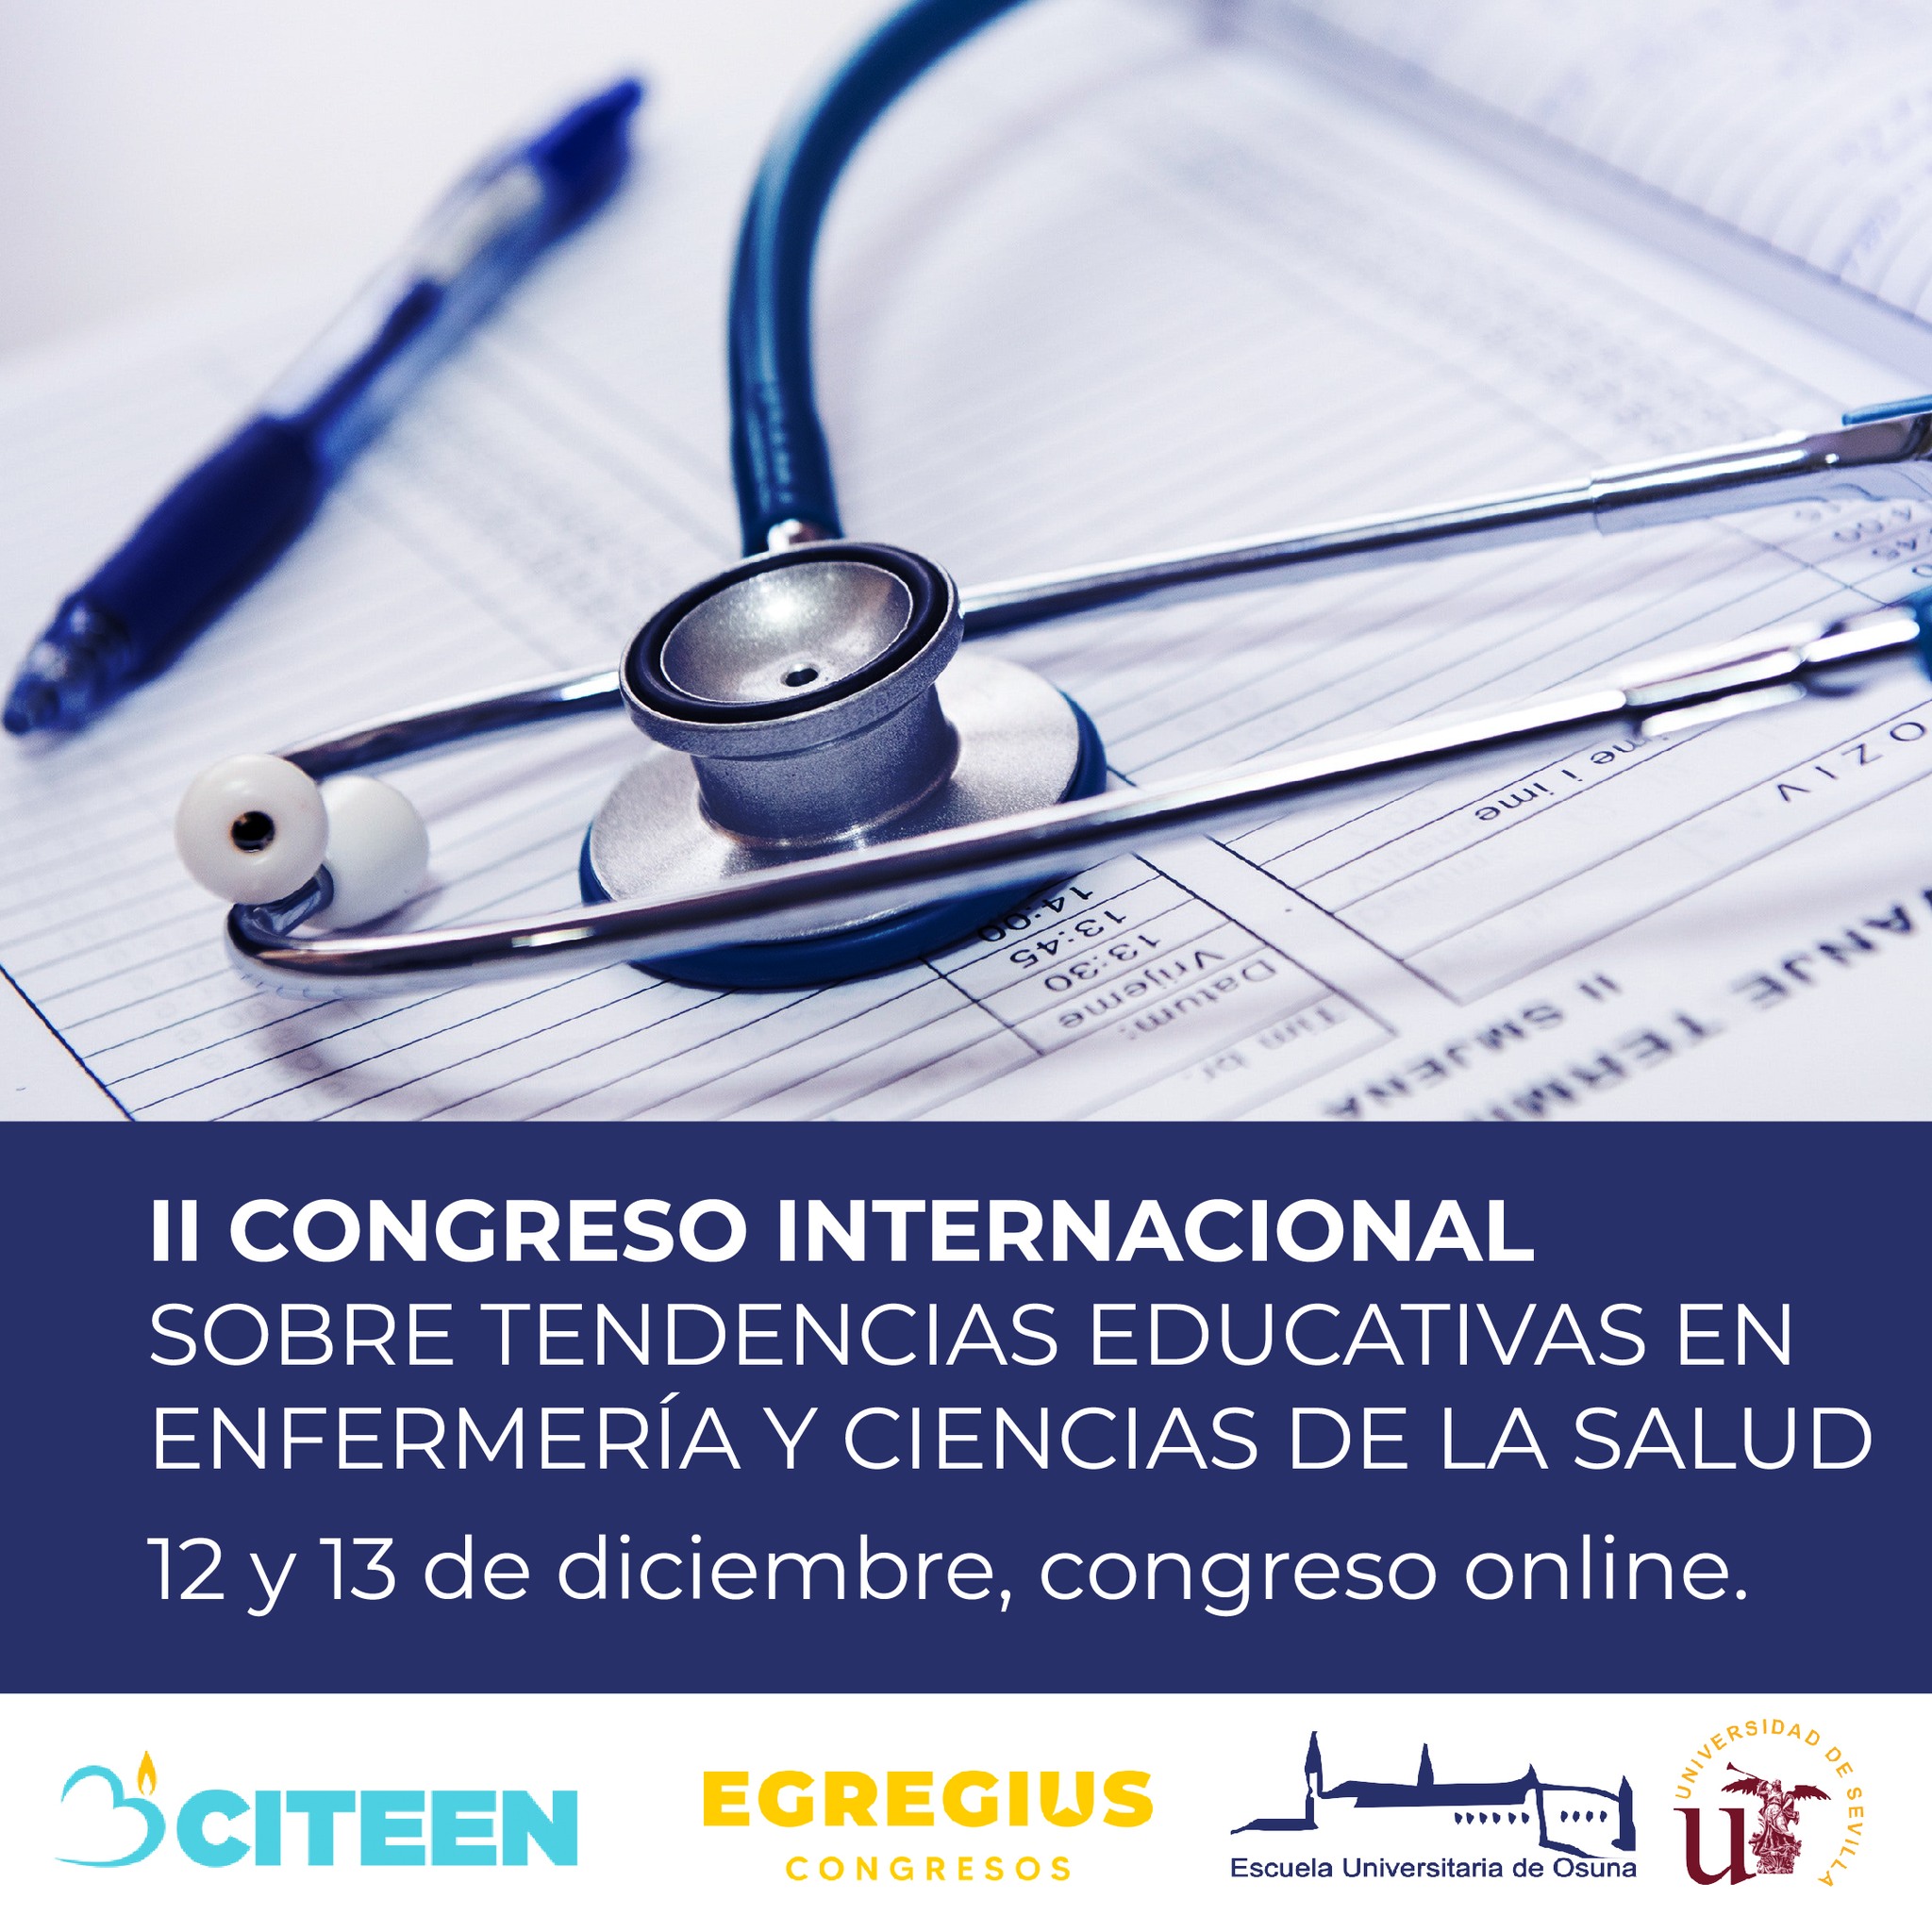 La Escuela Universitaria de Osuna entre los organizadores del II Congreso Internacional sobre Tendencias Educativas en Enfermería y Ciencias de la Salud